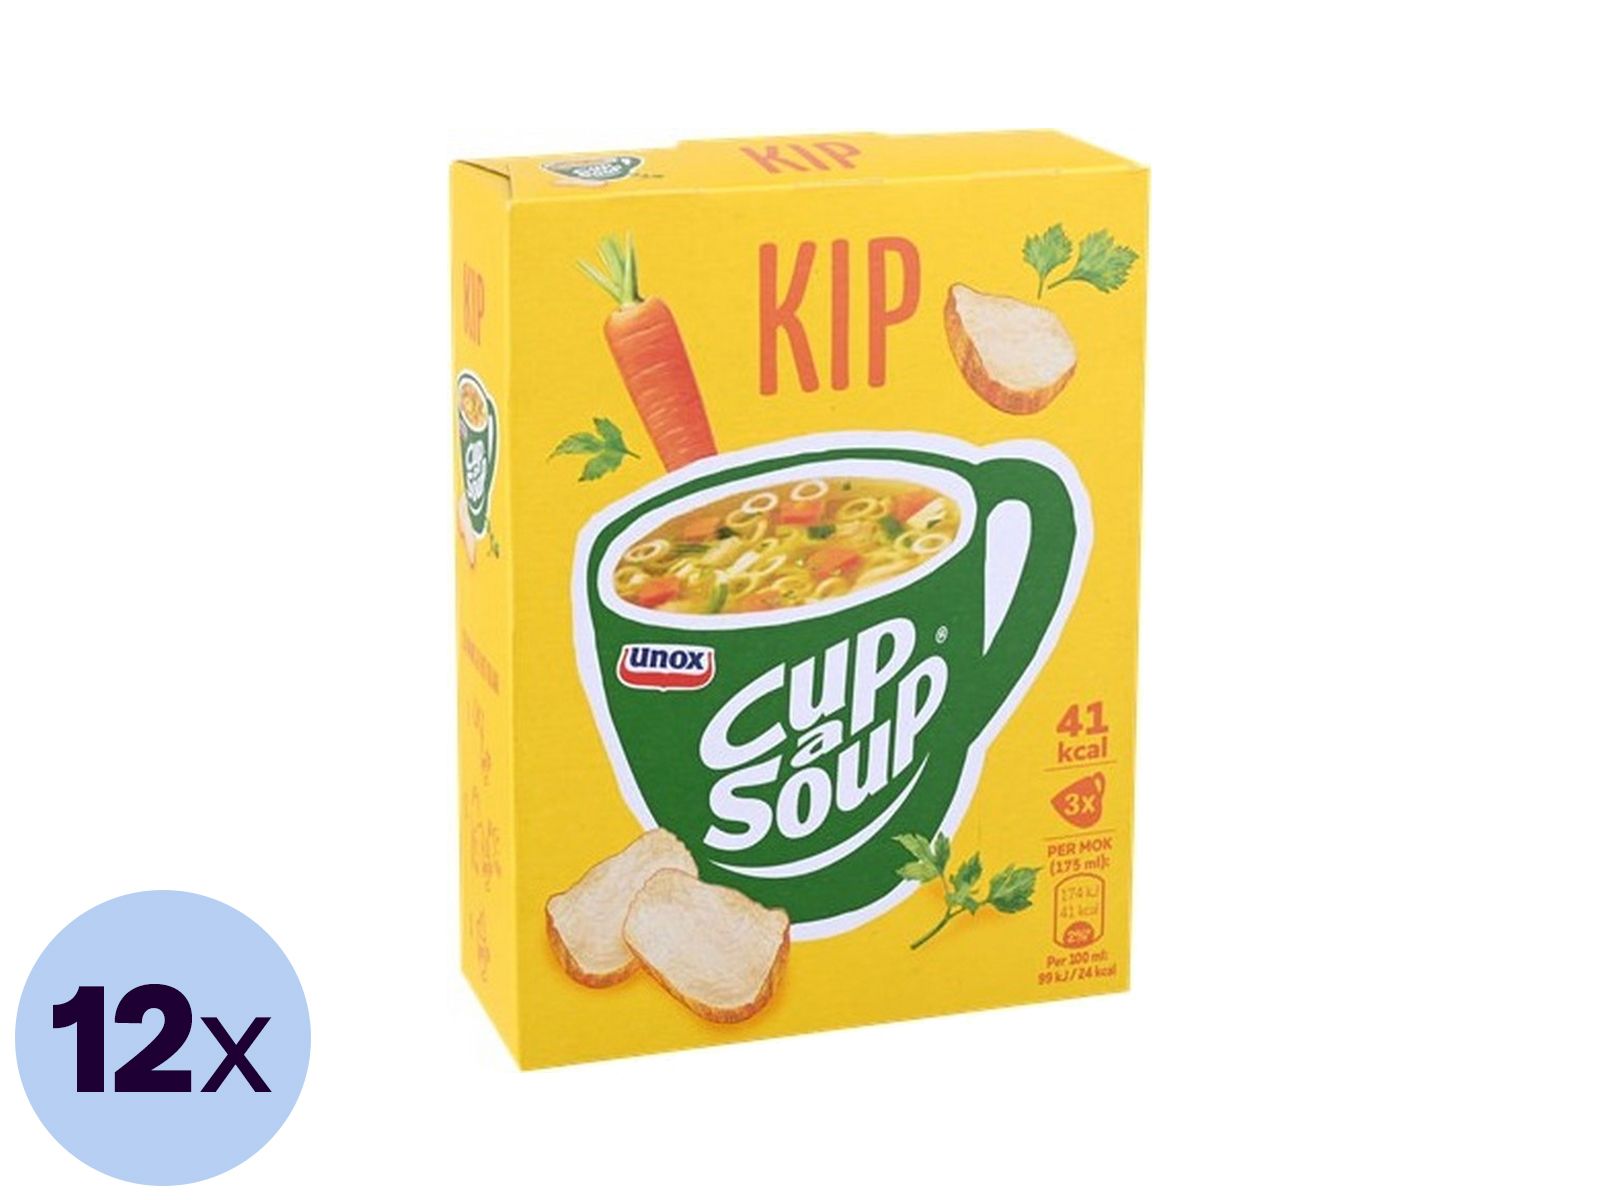 12x-doosje-unox-cup-a-soup-kip-36x-175-ml